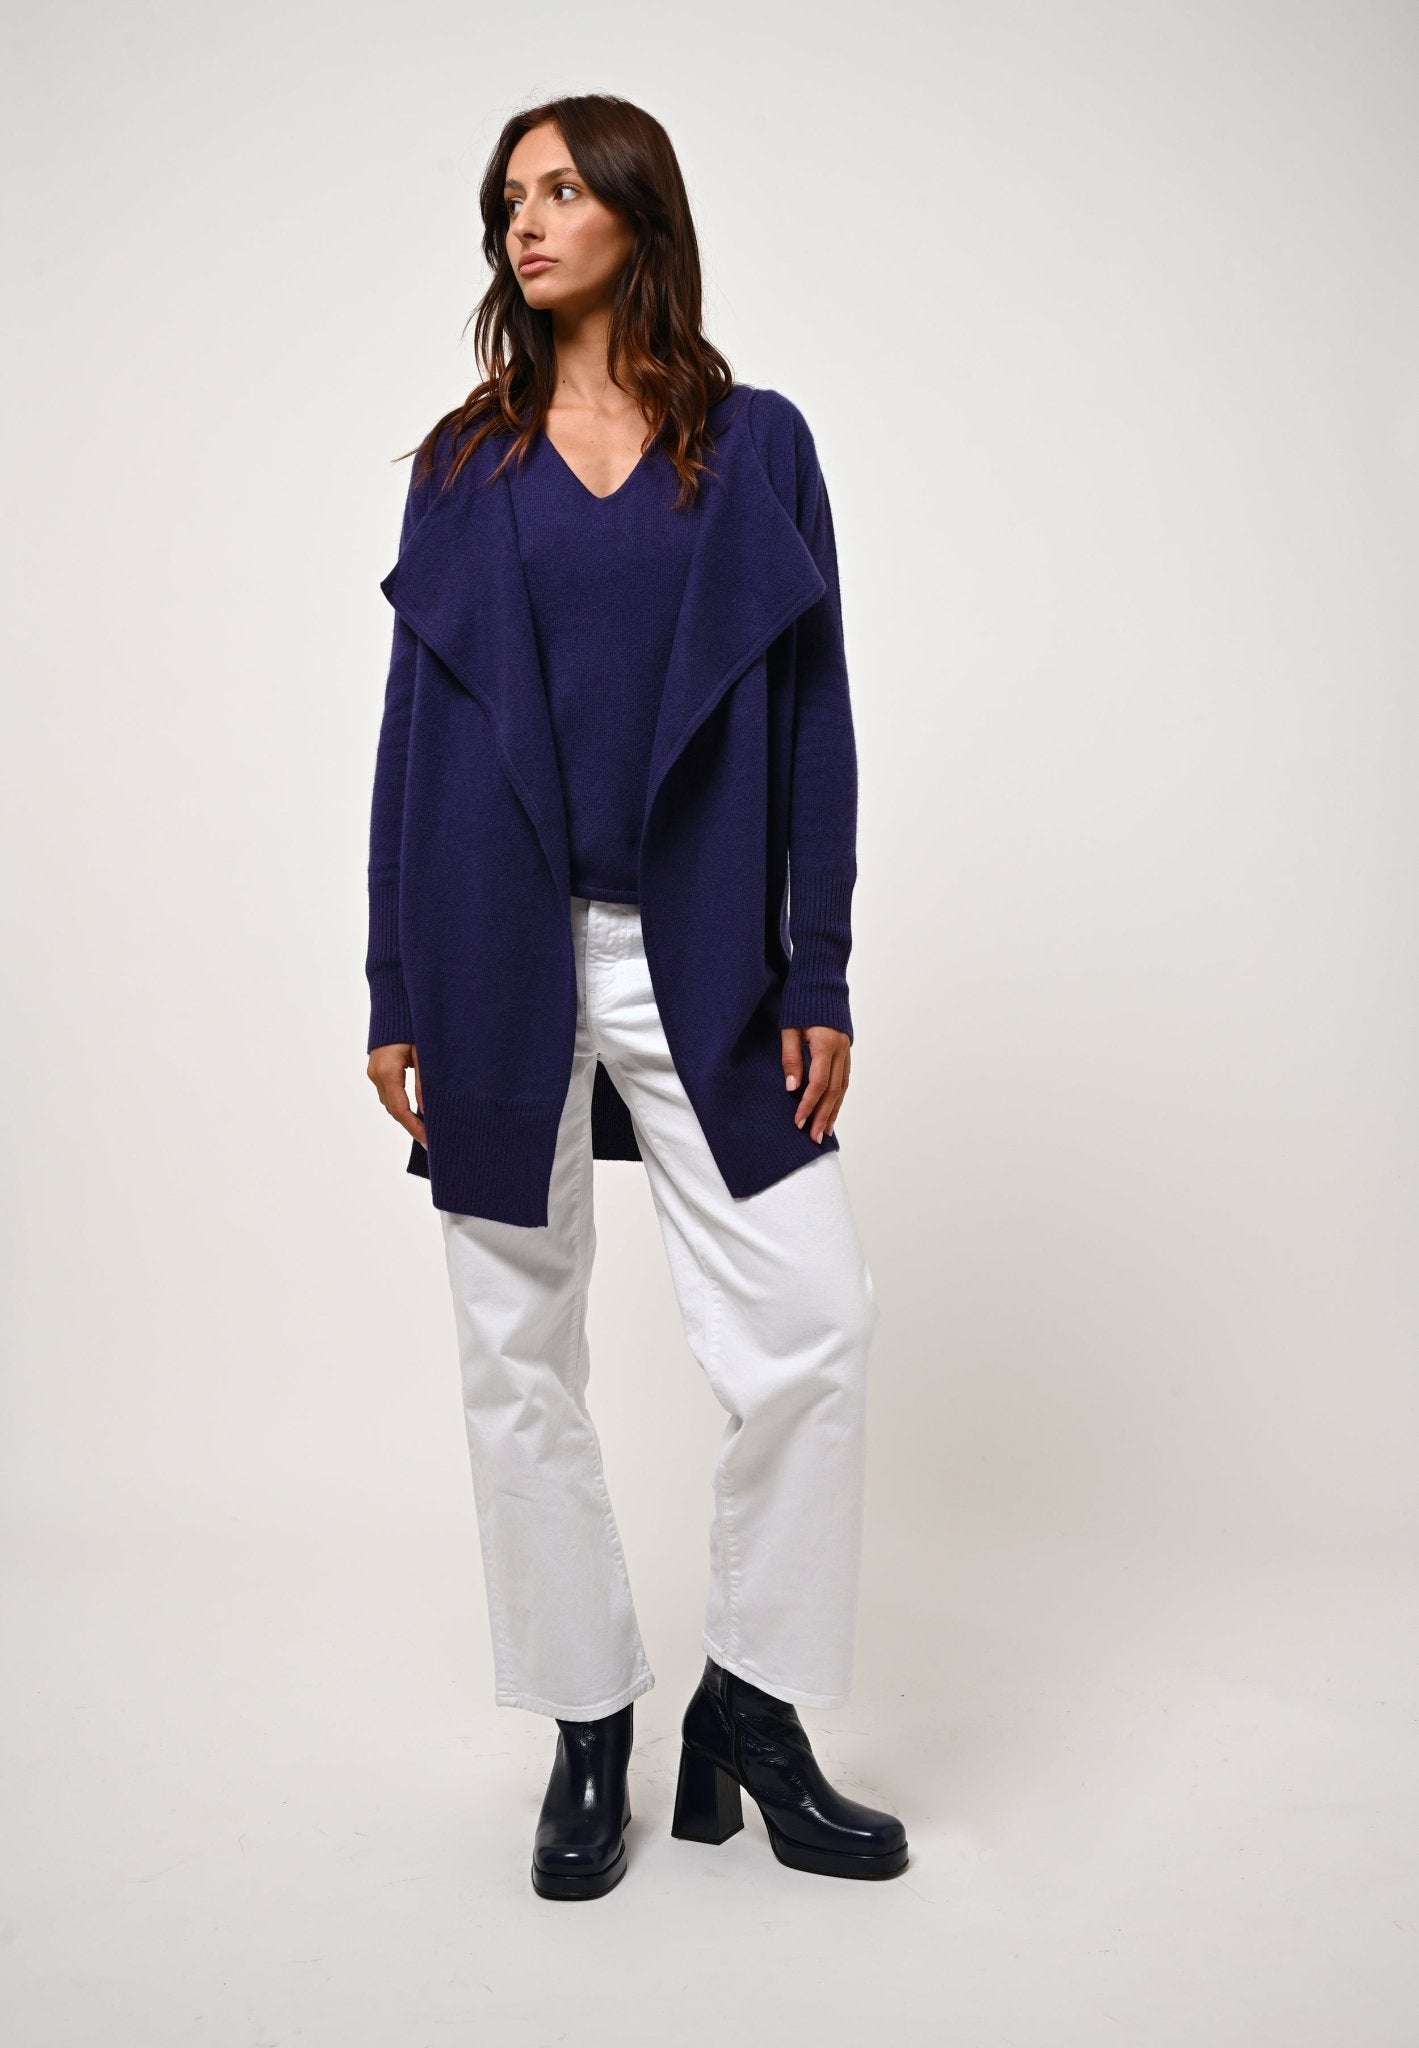 CHÉSERY veste longue purple 100% cachemire